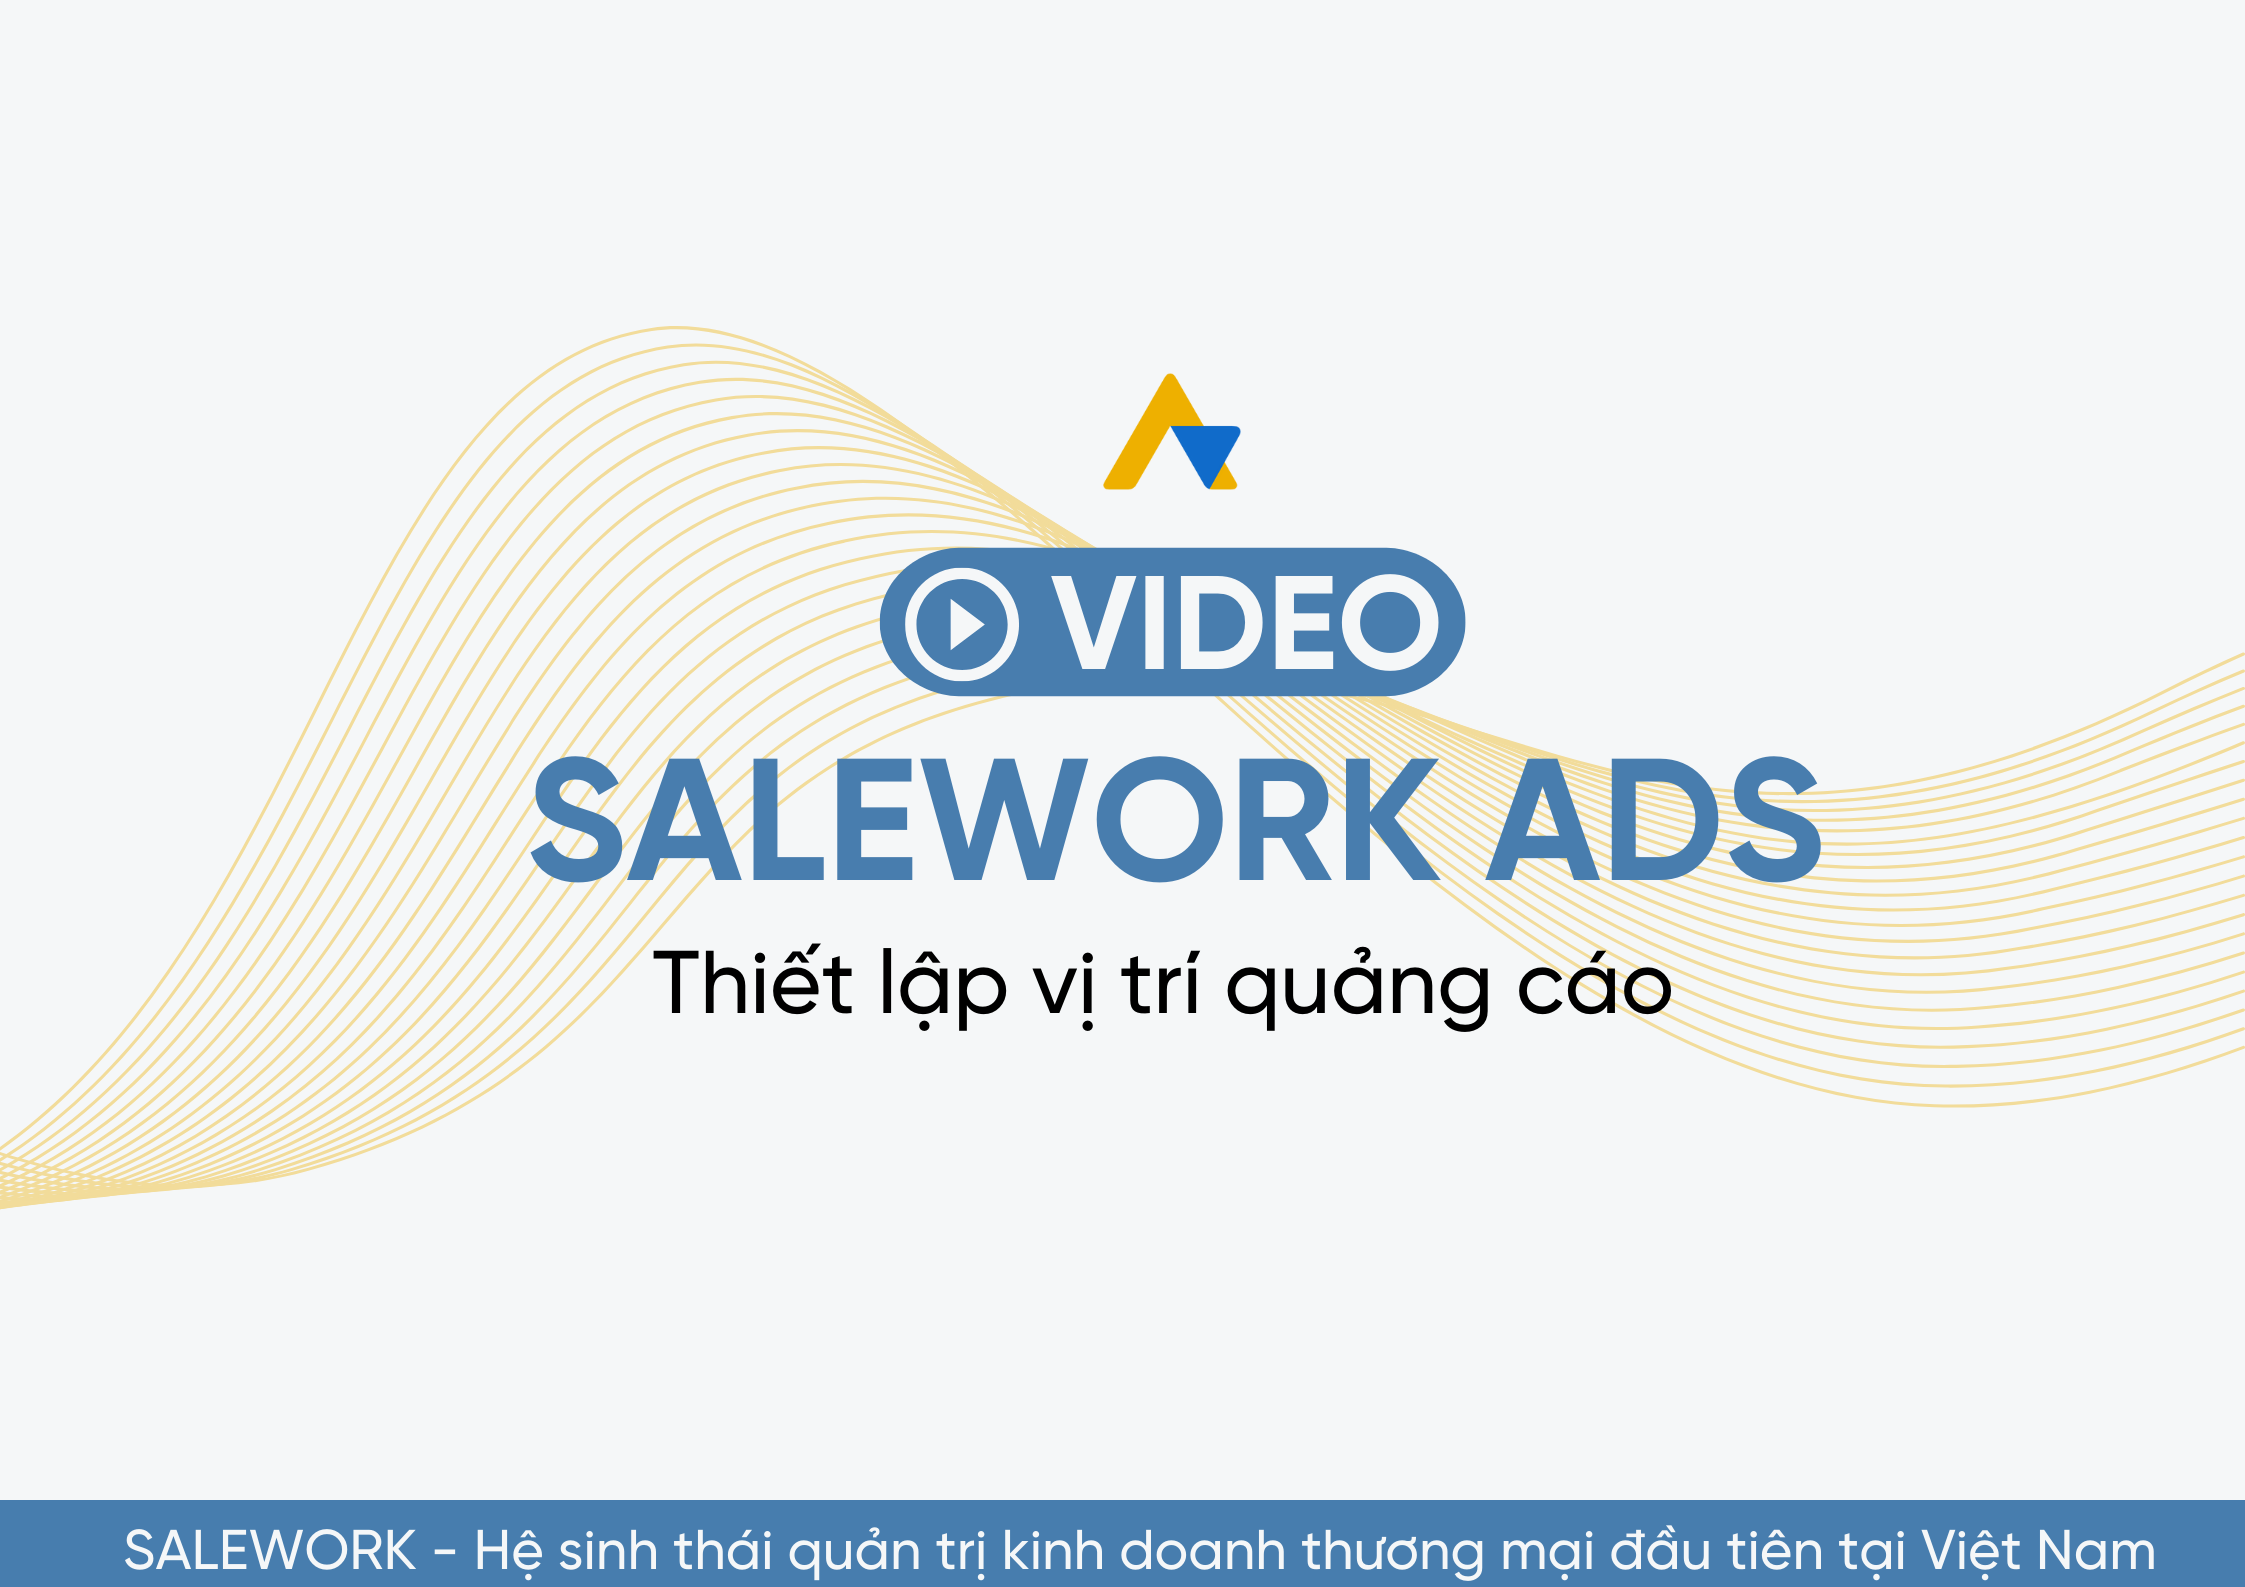 [VIDEO] Thiết lập vị trí quảng cáo tại Salework Ads - 19